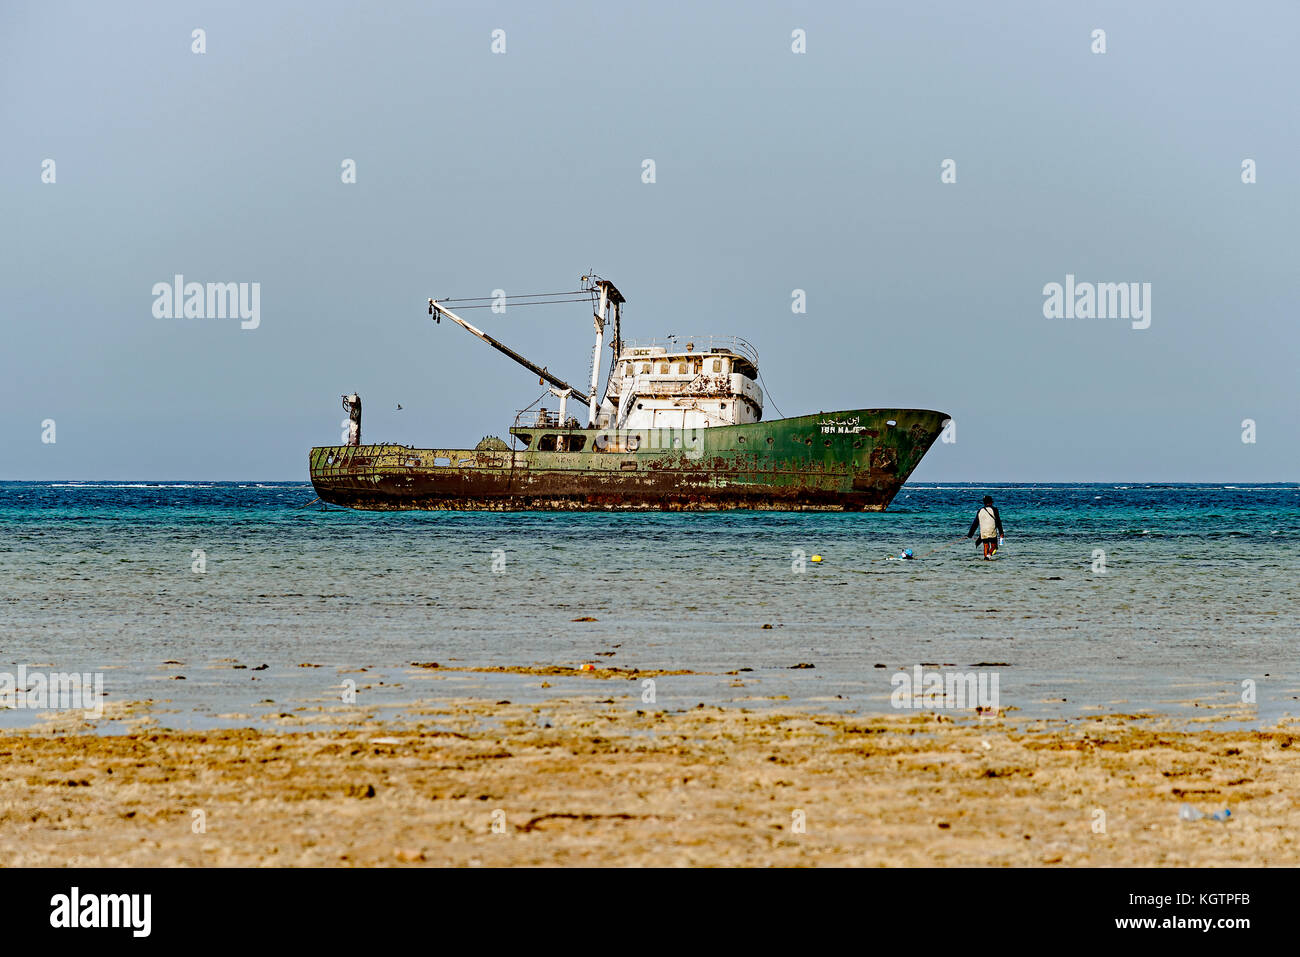 Un chalutier en Mer Rouge des naufragés abandonnés dans les eaux peu profondes, après avoir atteint de hauts-fonds. Photo prise en 2017 près de Al Qattan, au sud de la ville de Jeddah, Arabie saoudite. Banque D'Images